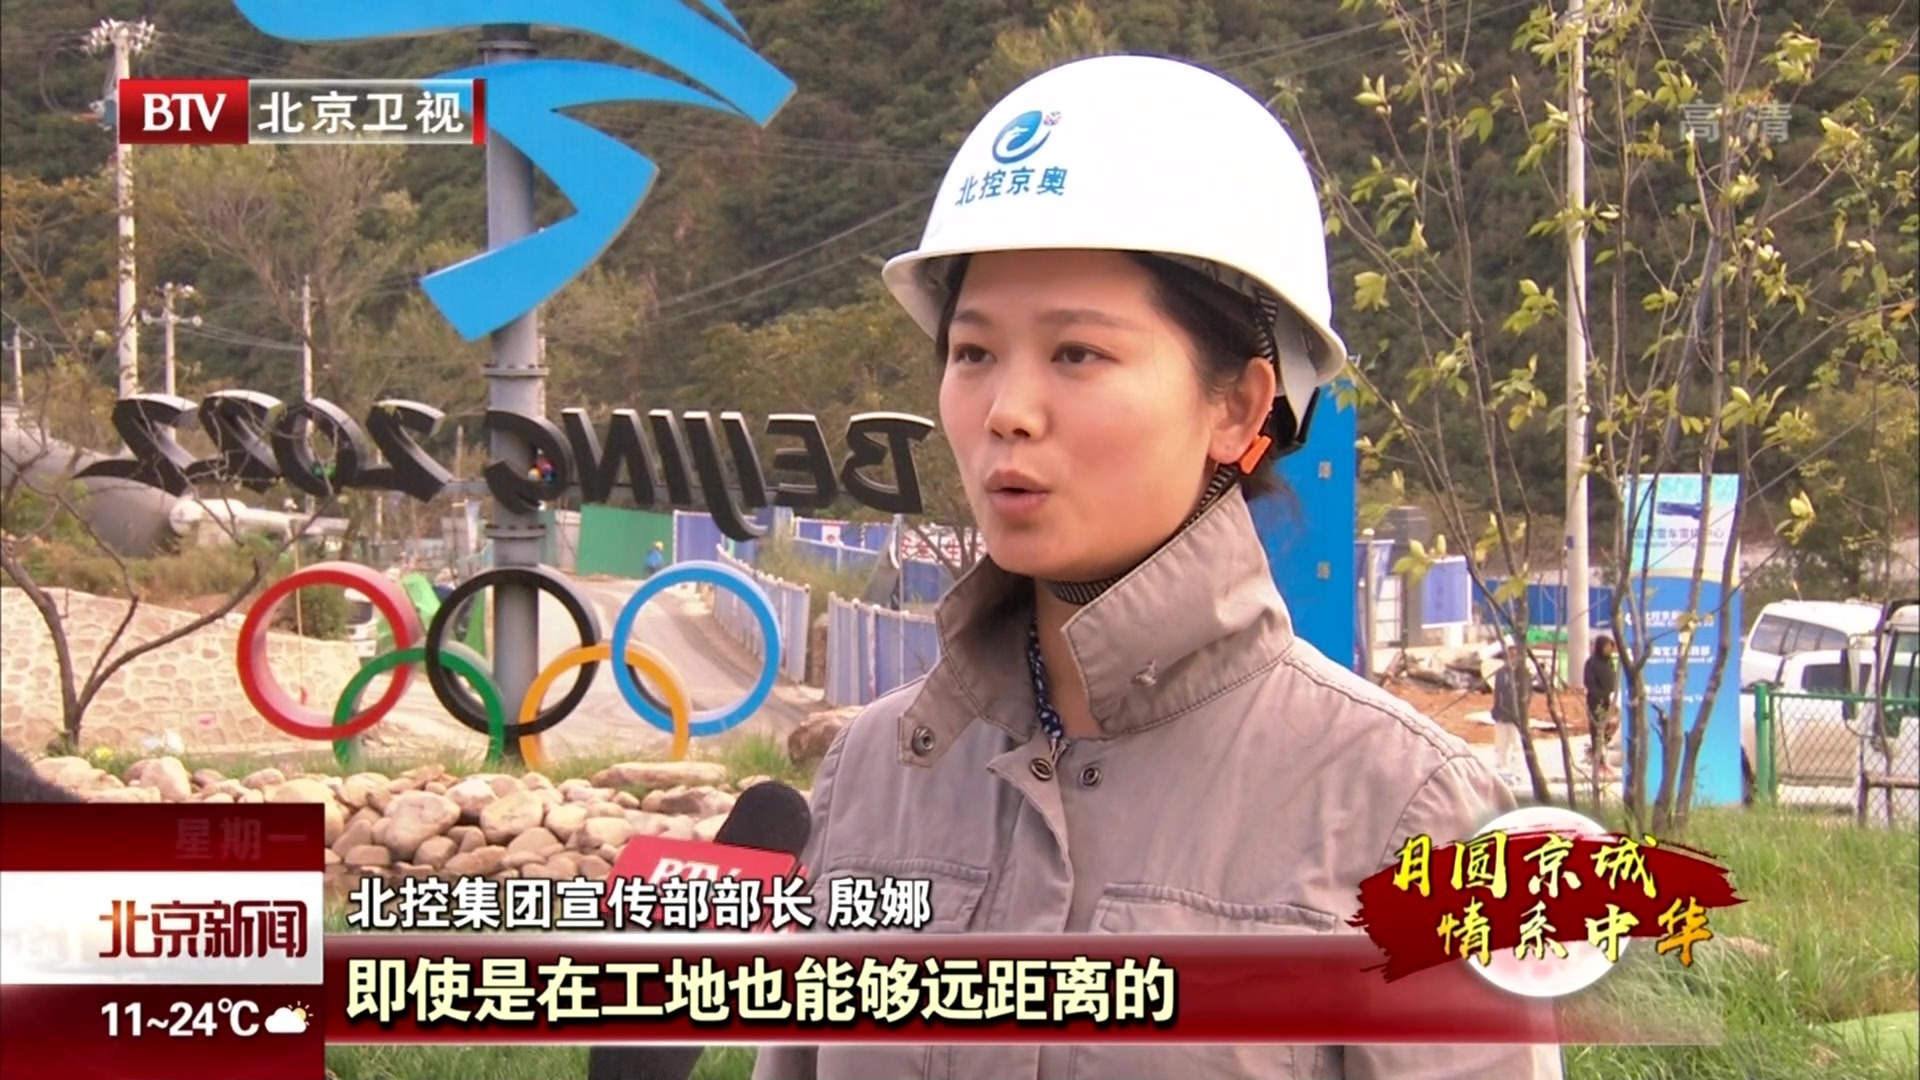 北控集团为北京延庆区冬奥会项目建设者送流量